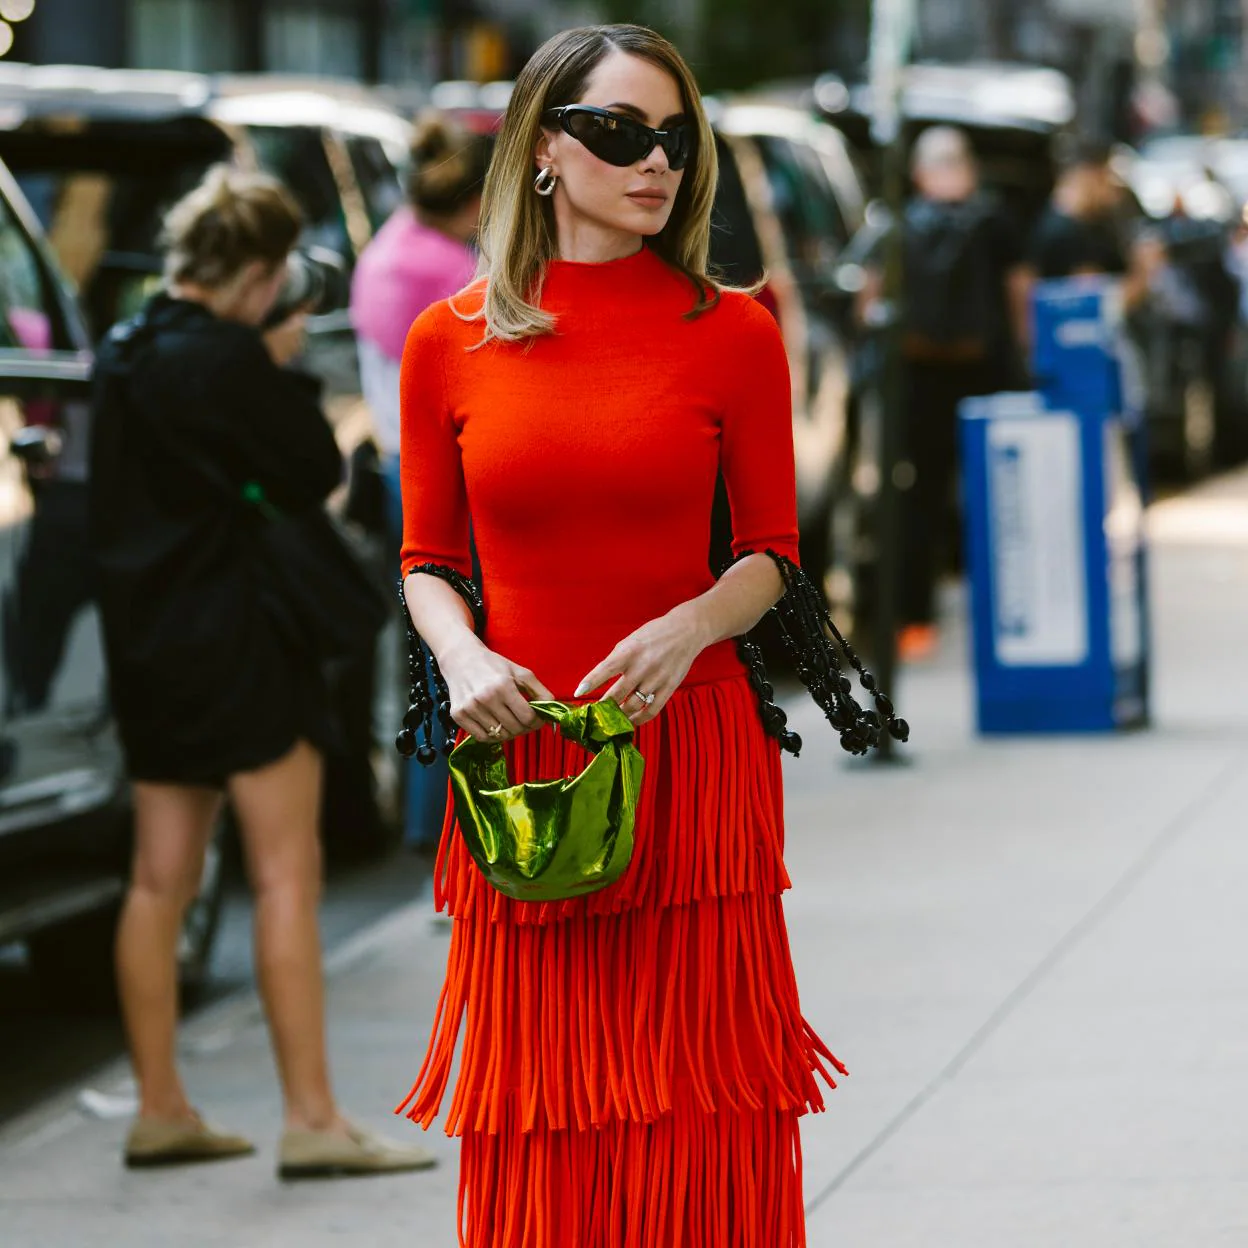 el color que más favorece: Zara tiene los vestidos rojos de Zara más  baratos, ponibles y favorecedores